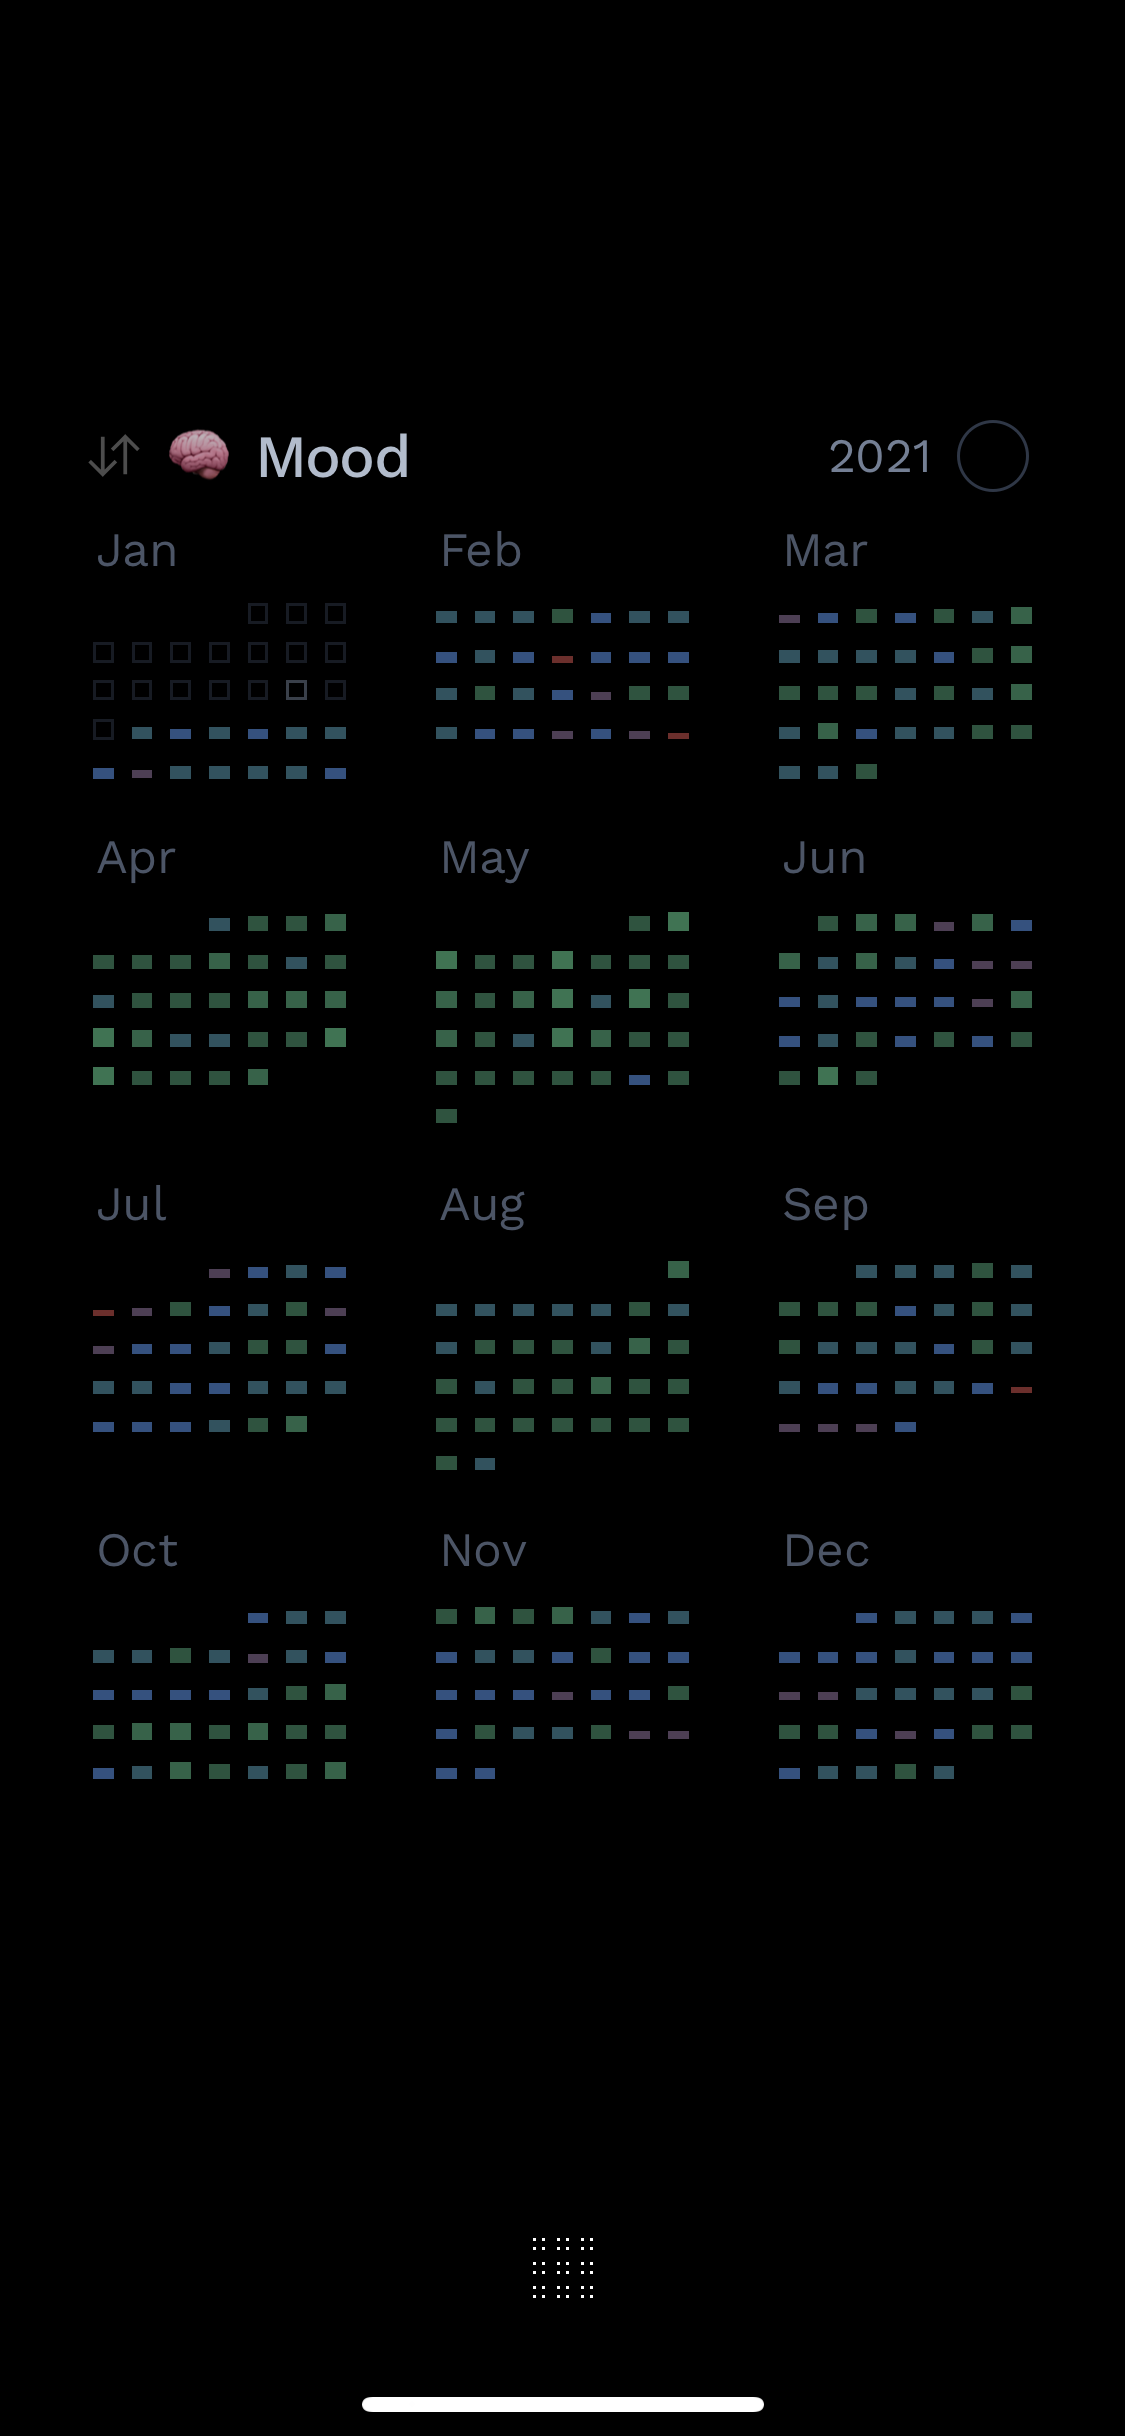 Screenshot of Blocks app showing mood habit throughout 2021